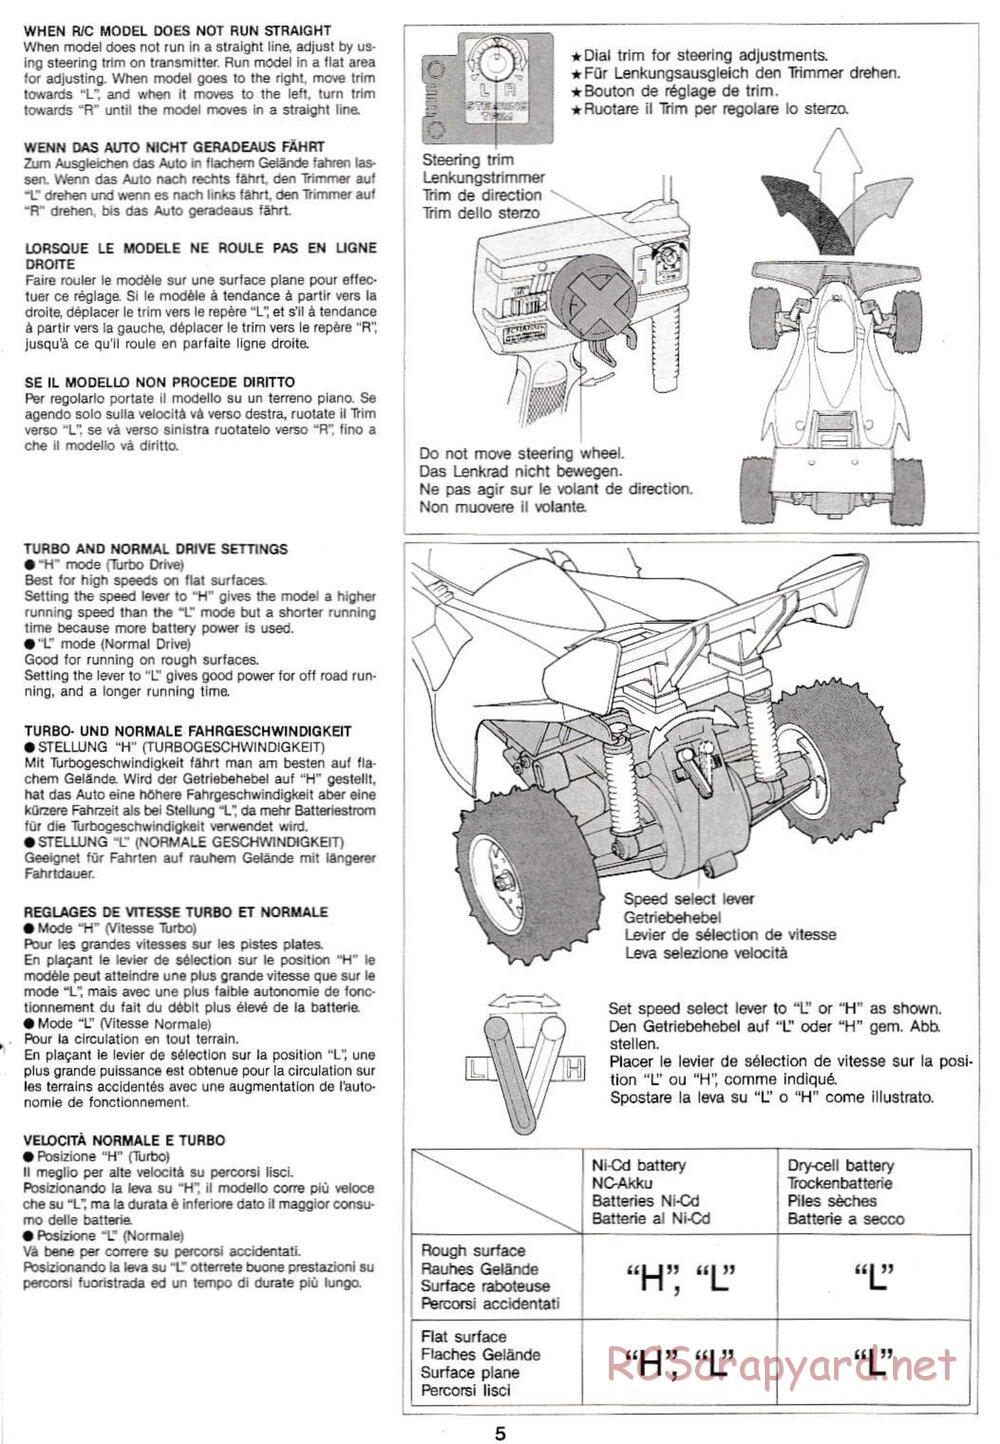 Tamiya - Manta Ray QD Chassis - Manual - Page 5